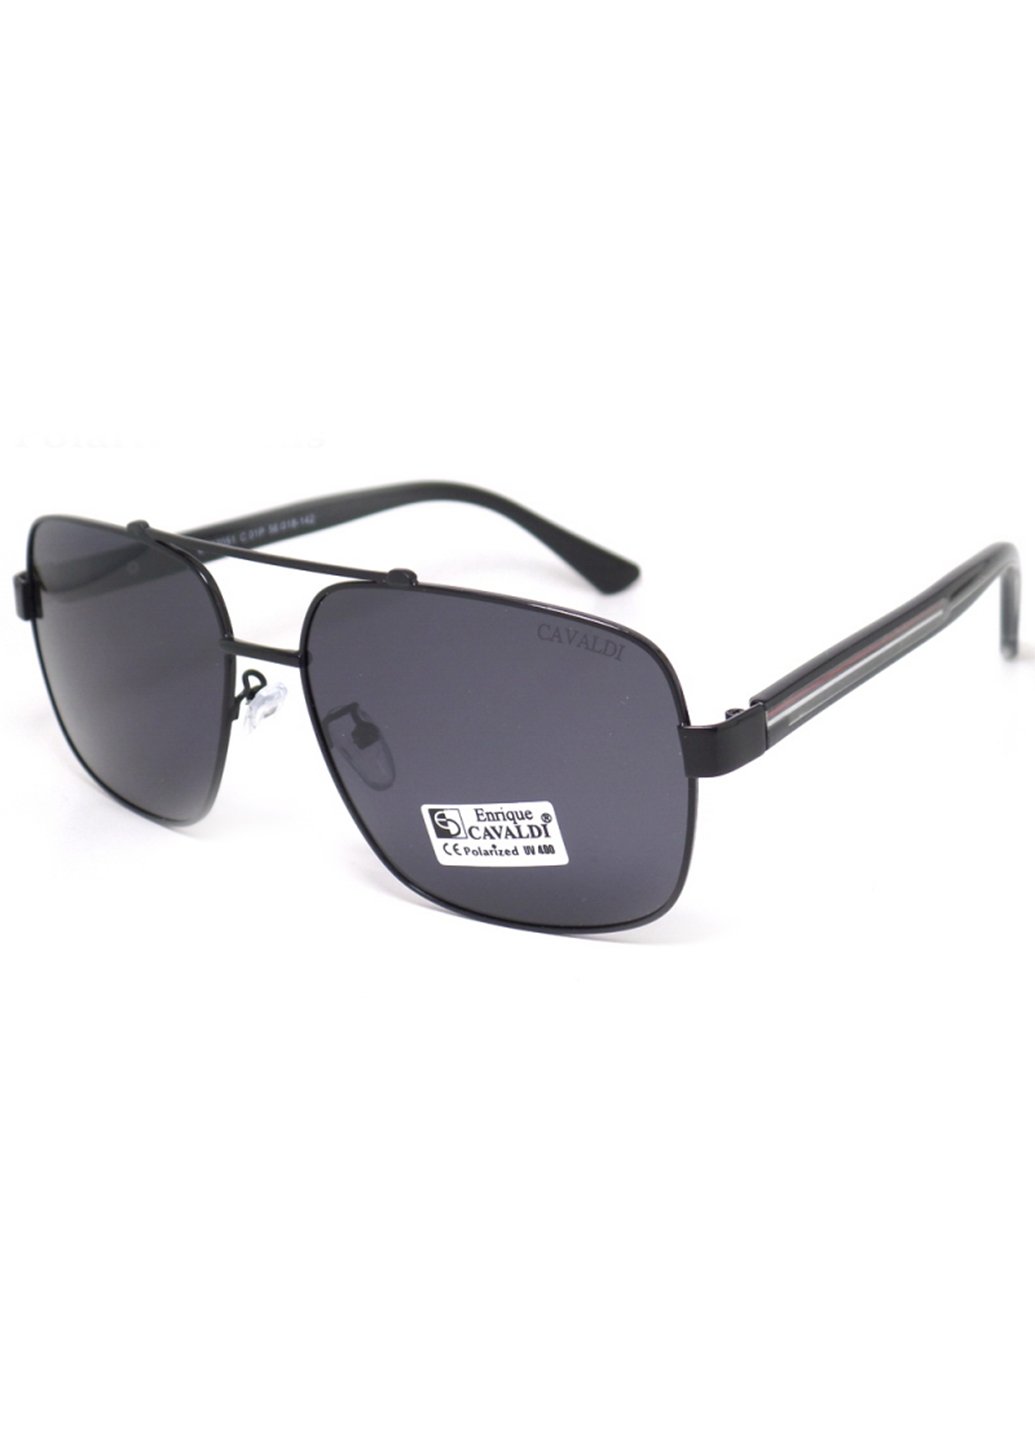 Купить Мужские солнцезащитные очки Enrique Cavaldi EC87051 150001 - Черный в интернет-магазине